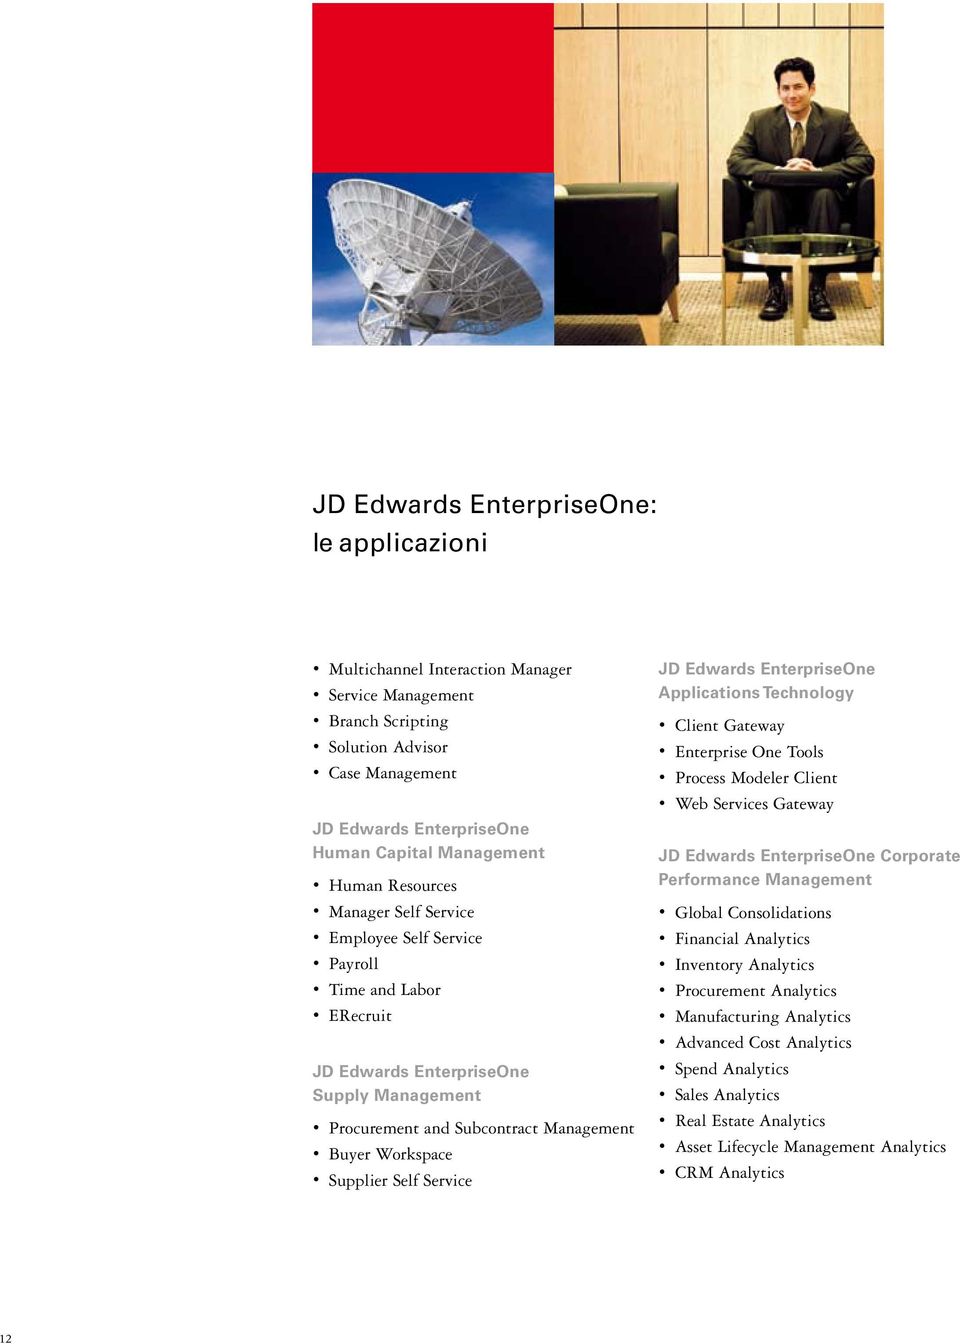 Service JD Edwards EnterpriseOne Applications Technology Client Gateway Enterprise One Tools Process Modeler Client Web Services Gateway JD Edwards EnterpriseOne Corporate Performance Management